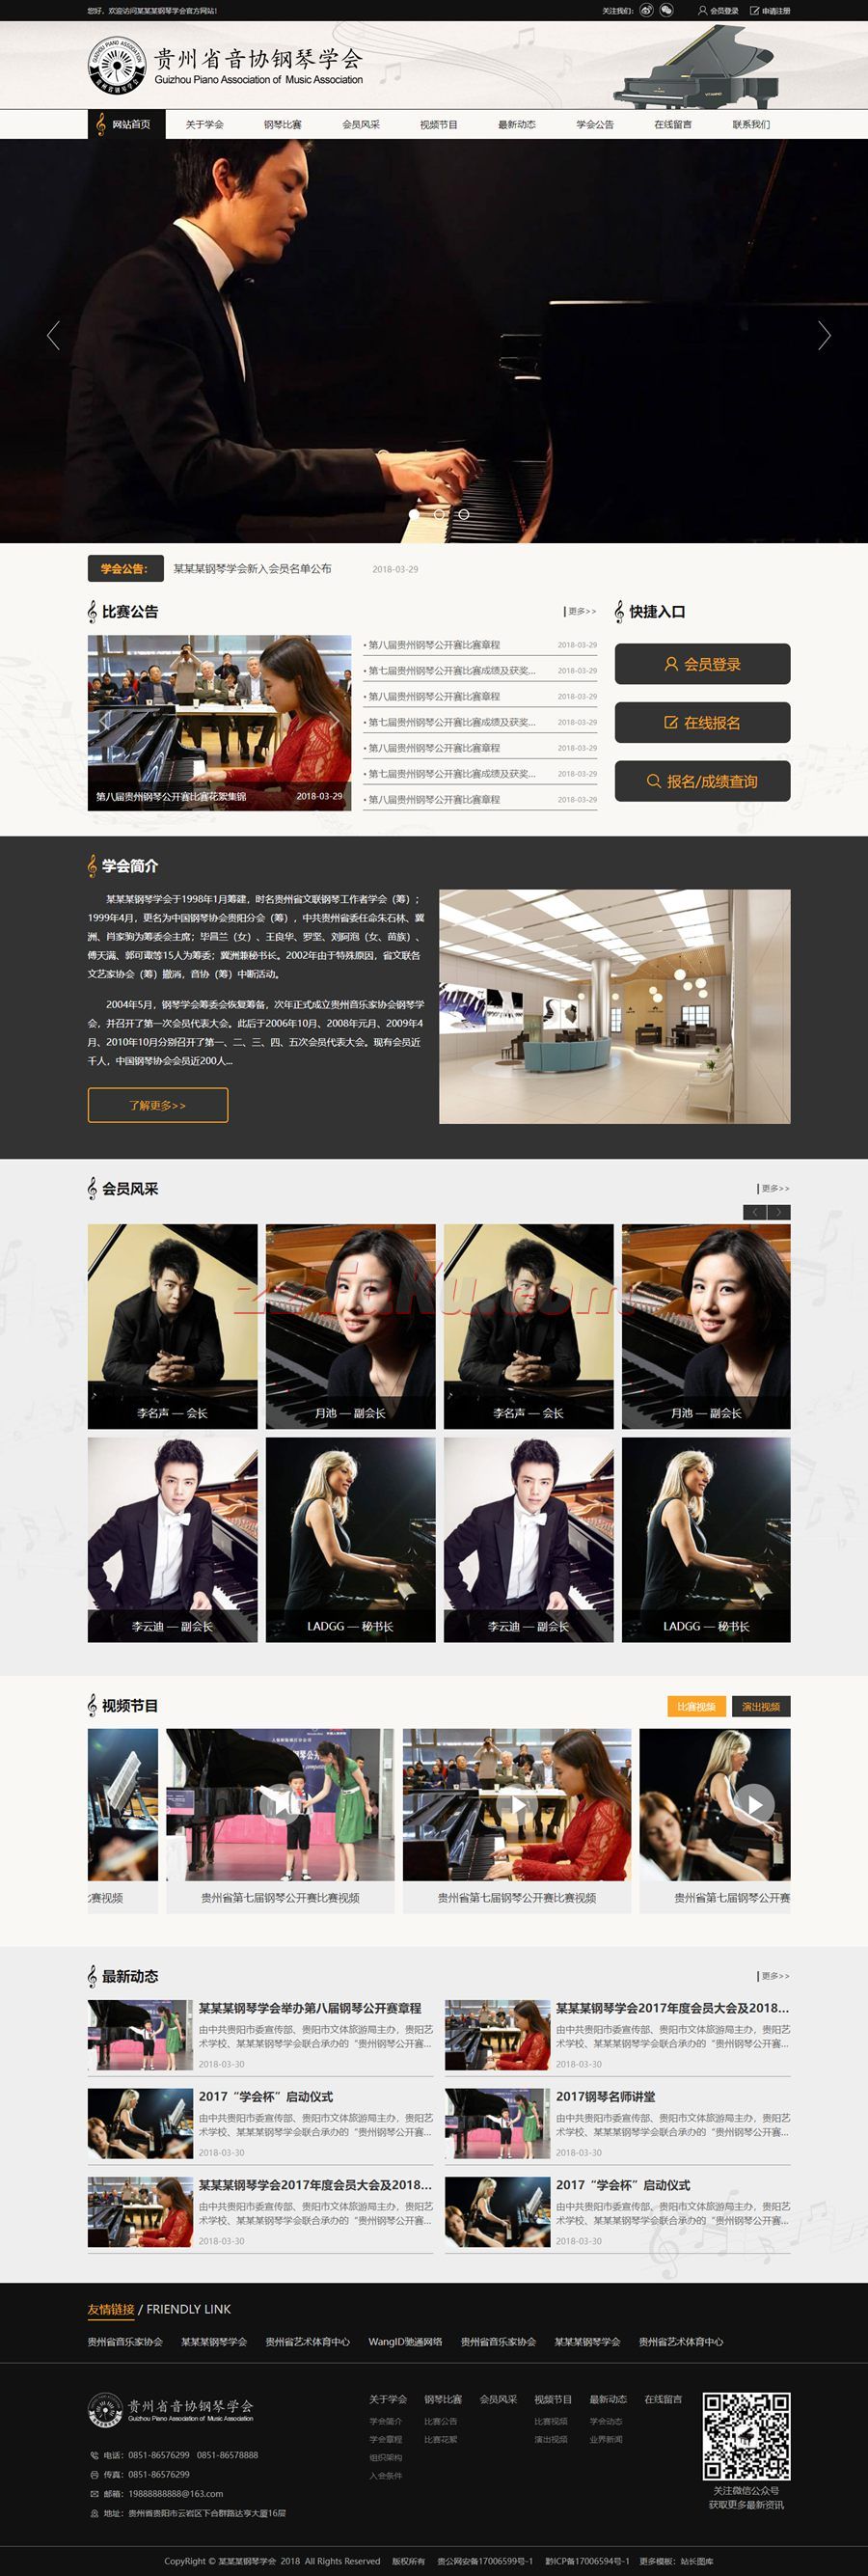 黑色的音协钢琴学会官方网站整站html模板